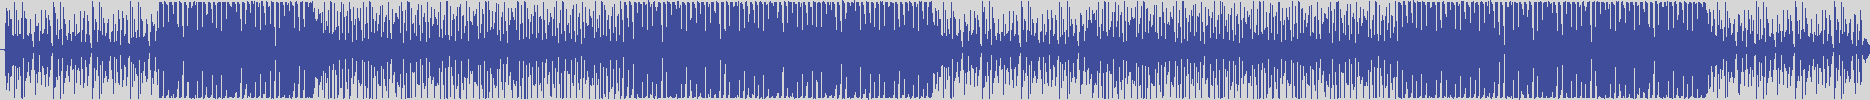 nf_boyz_records [NFY013] Mohamed Abbas - Kadesh [Original Mix] audio wave form